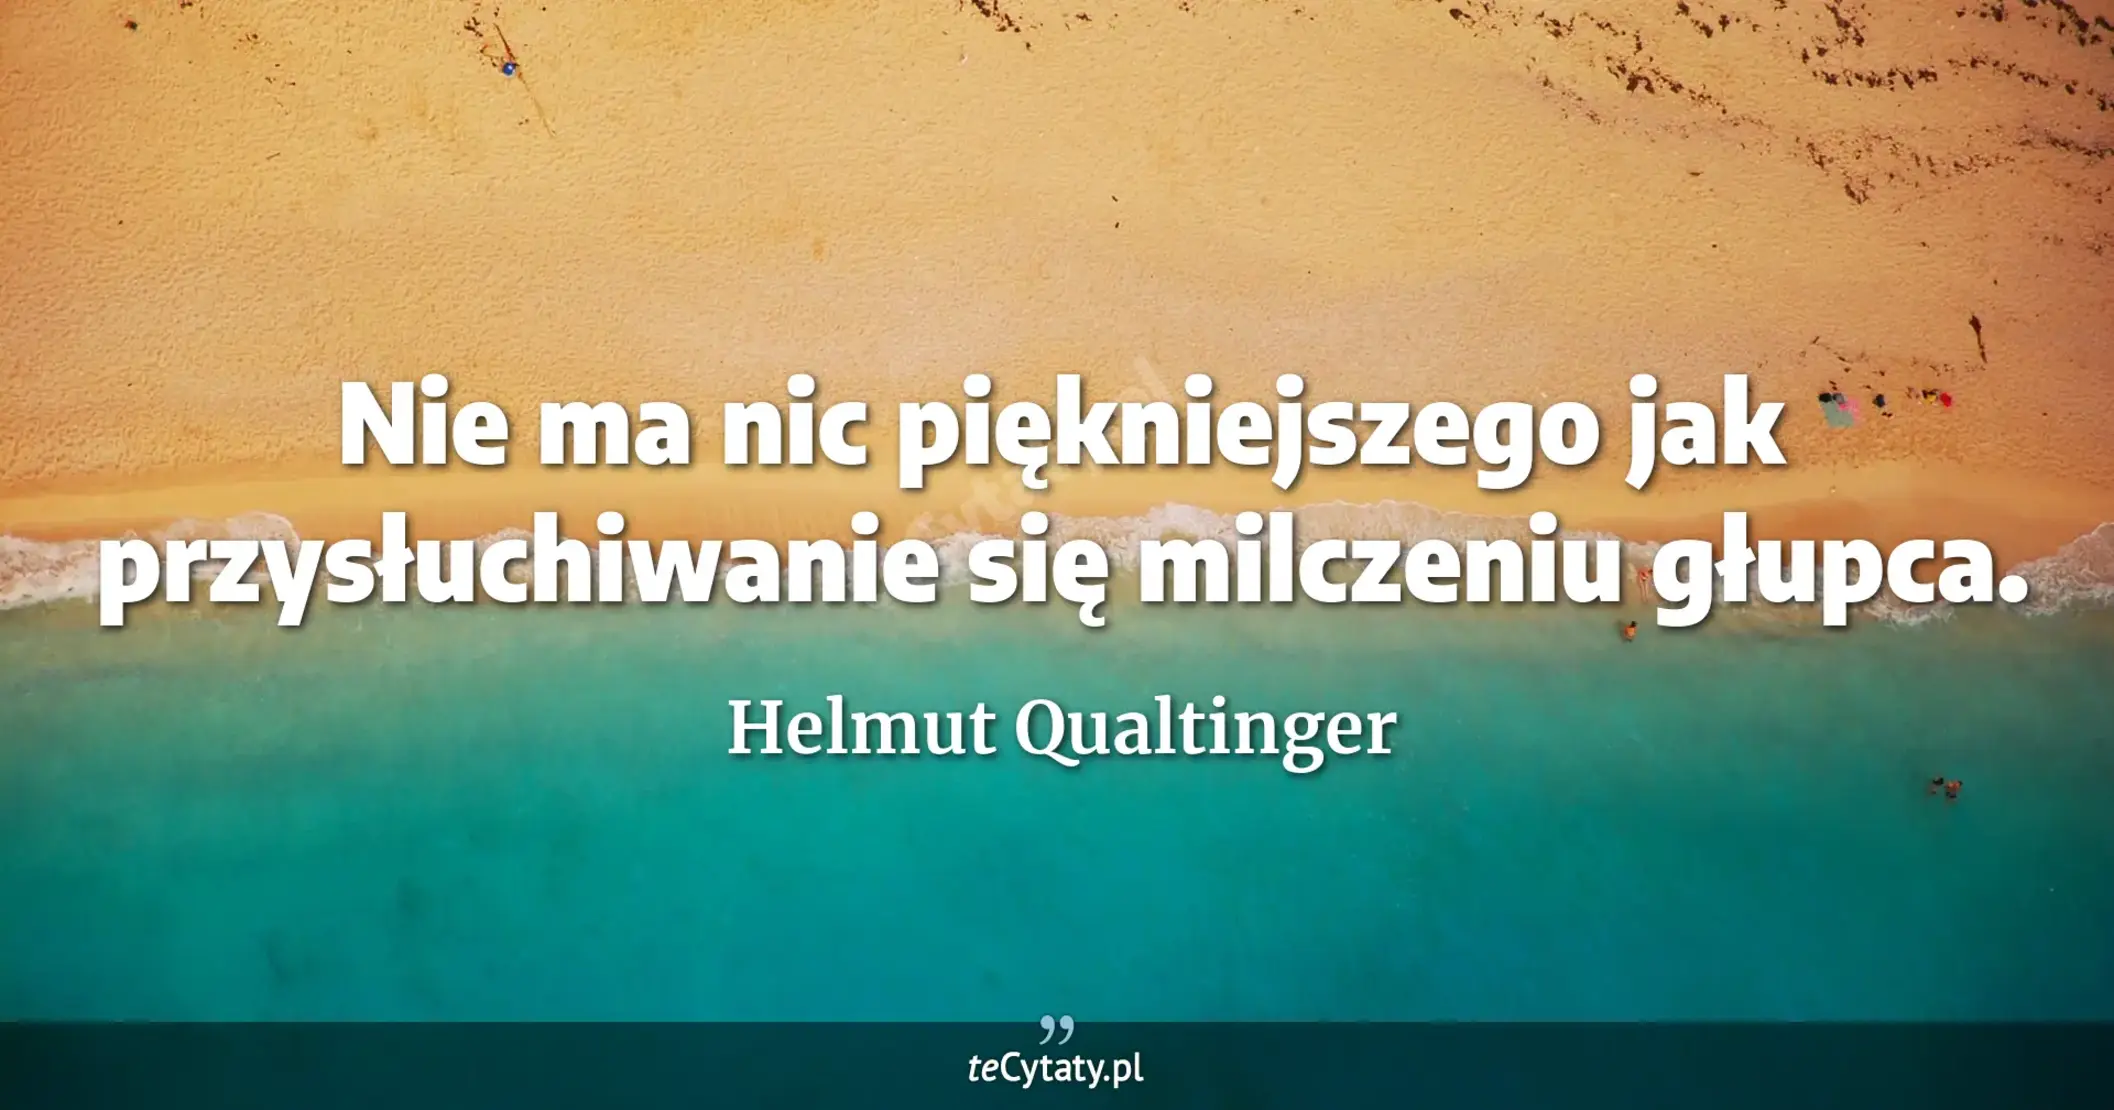 Nie ma nic piękniejszego jak przysłuchiwanie się milczeniu głupca. - Helmut Qualtinger